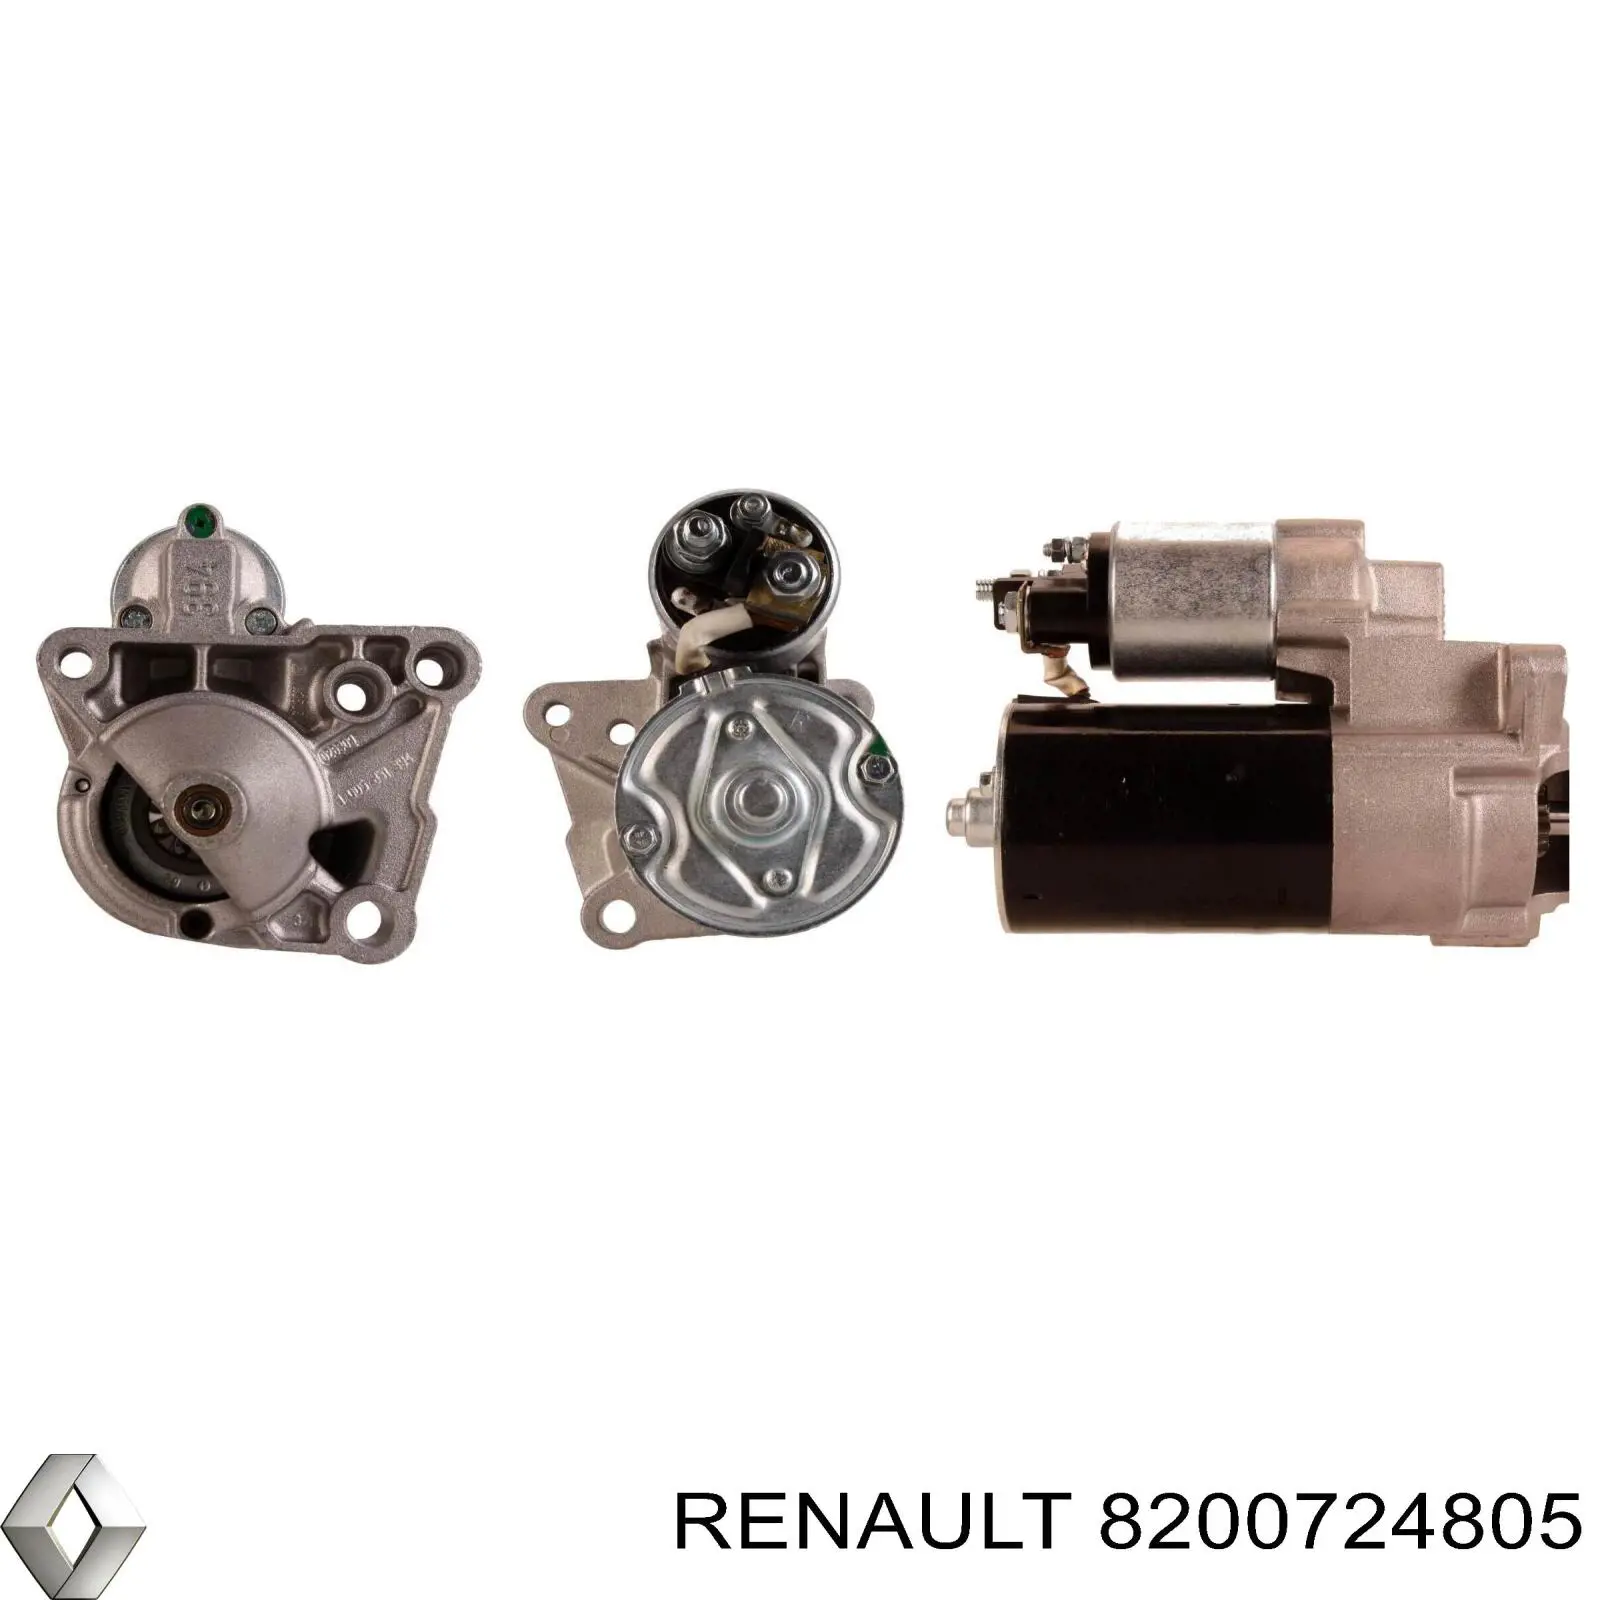 8200724805 Renault (RVI) motor de arranque